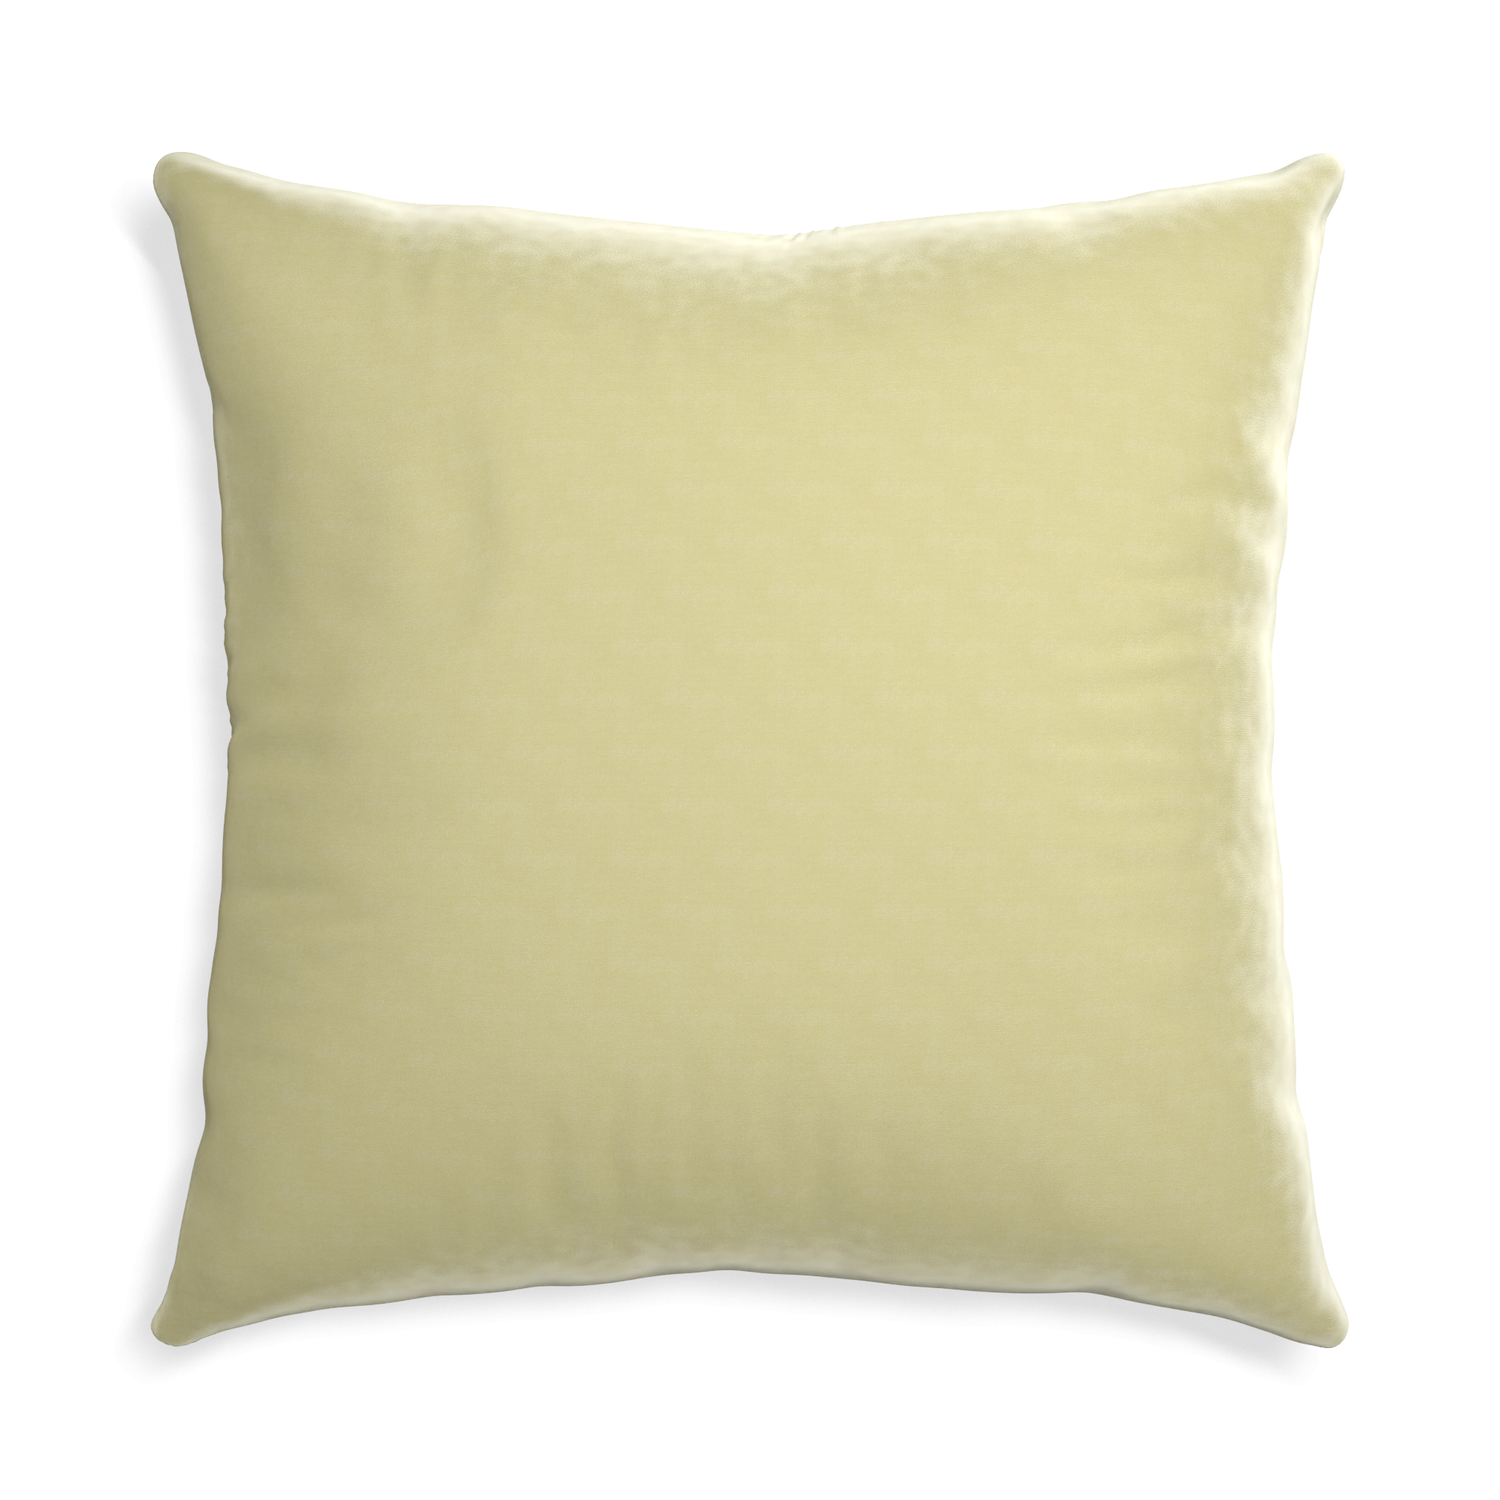 Euro-sham pear velvet custom pillow with none on white background